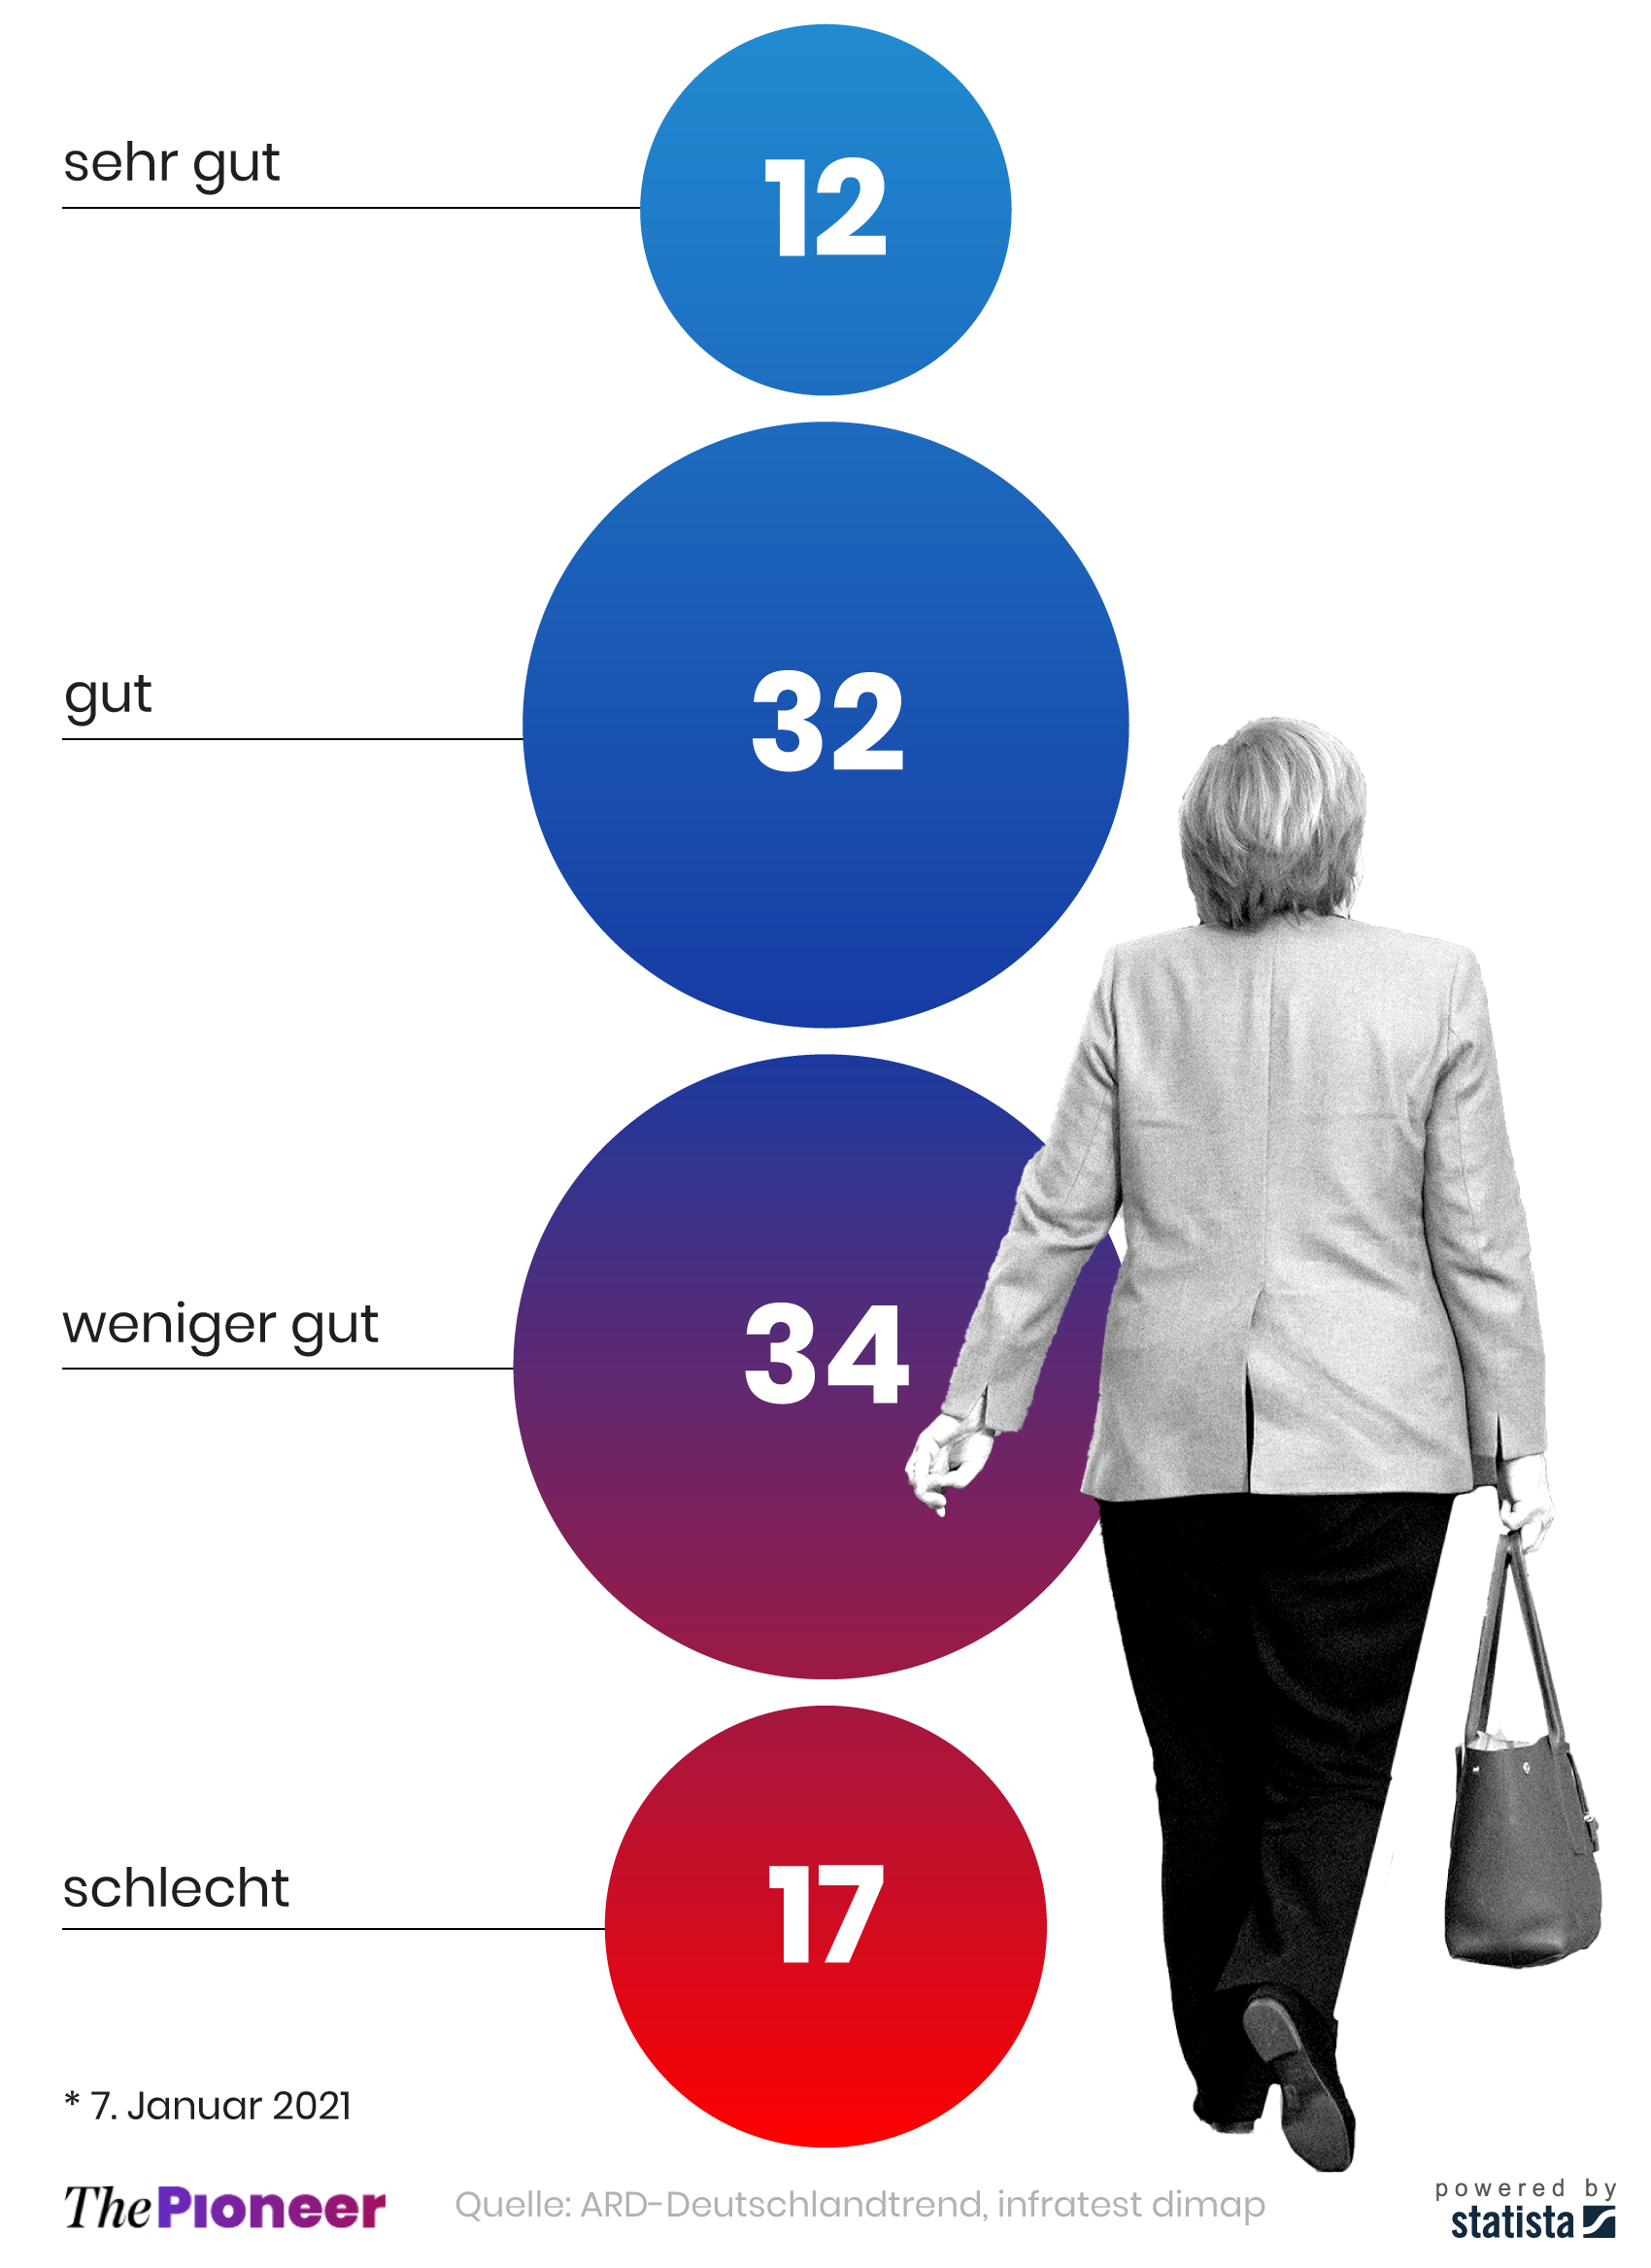 Antworten auf die Frage*: Ist das Ende der Kanzlerschaft Merkels gut oder schlecht für Deutschland, in Prozent